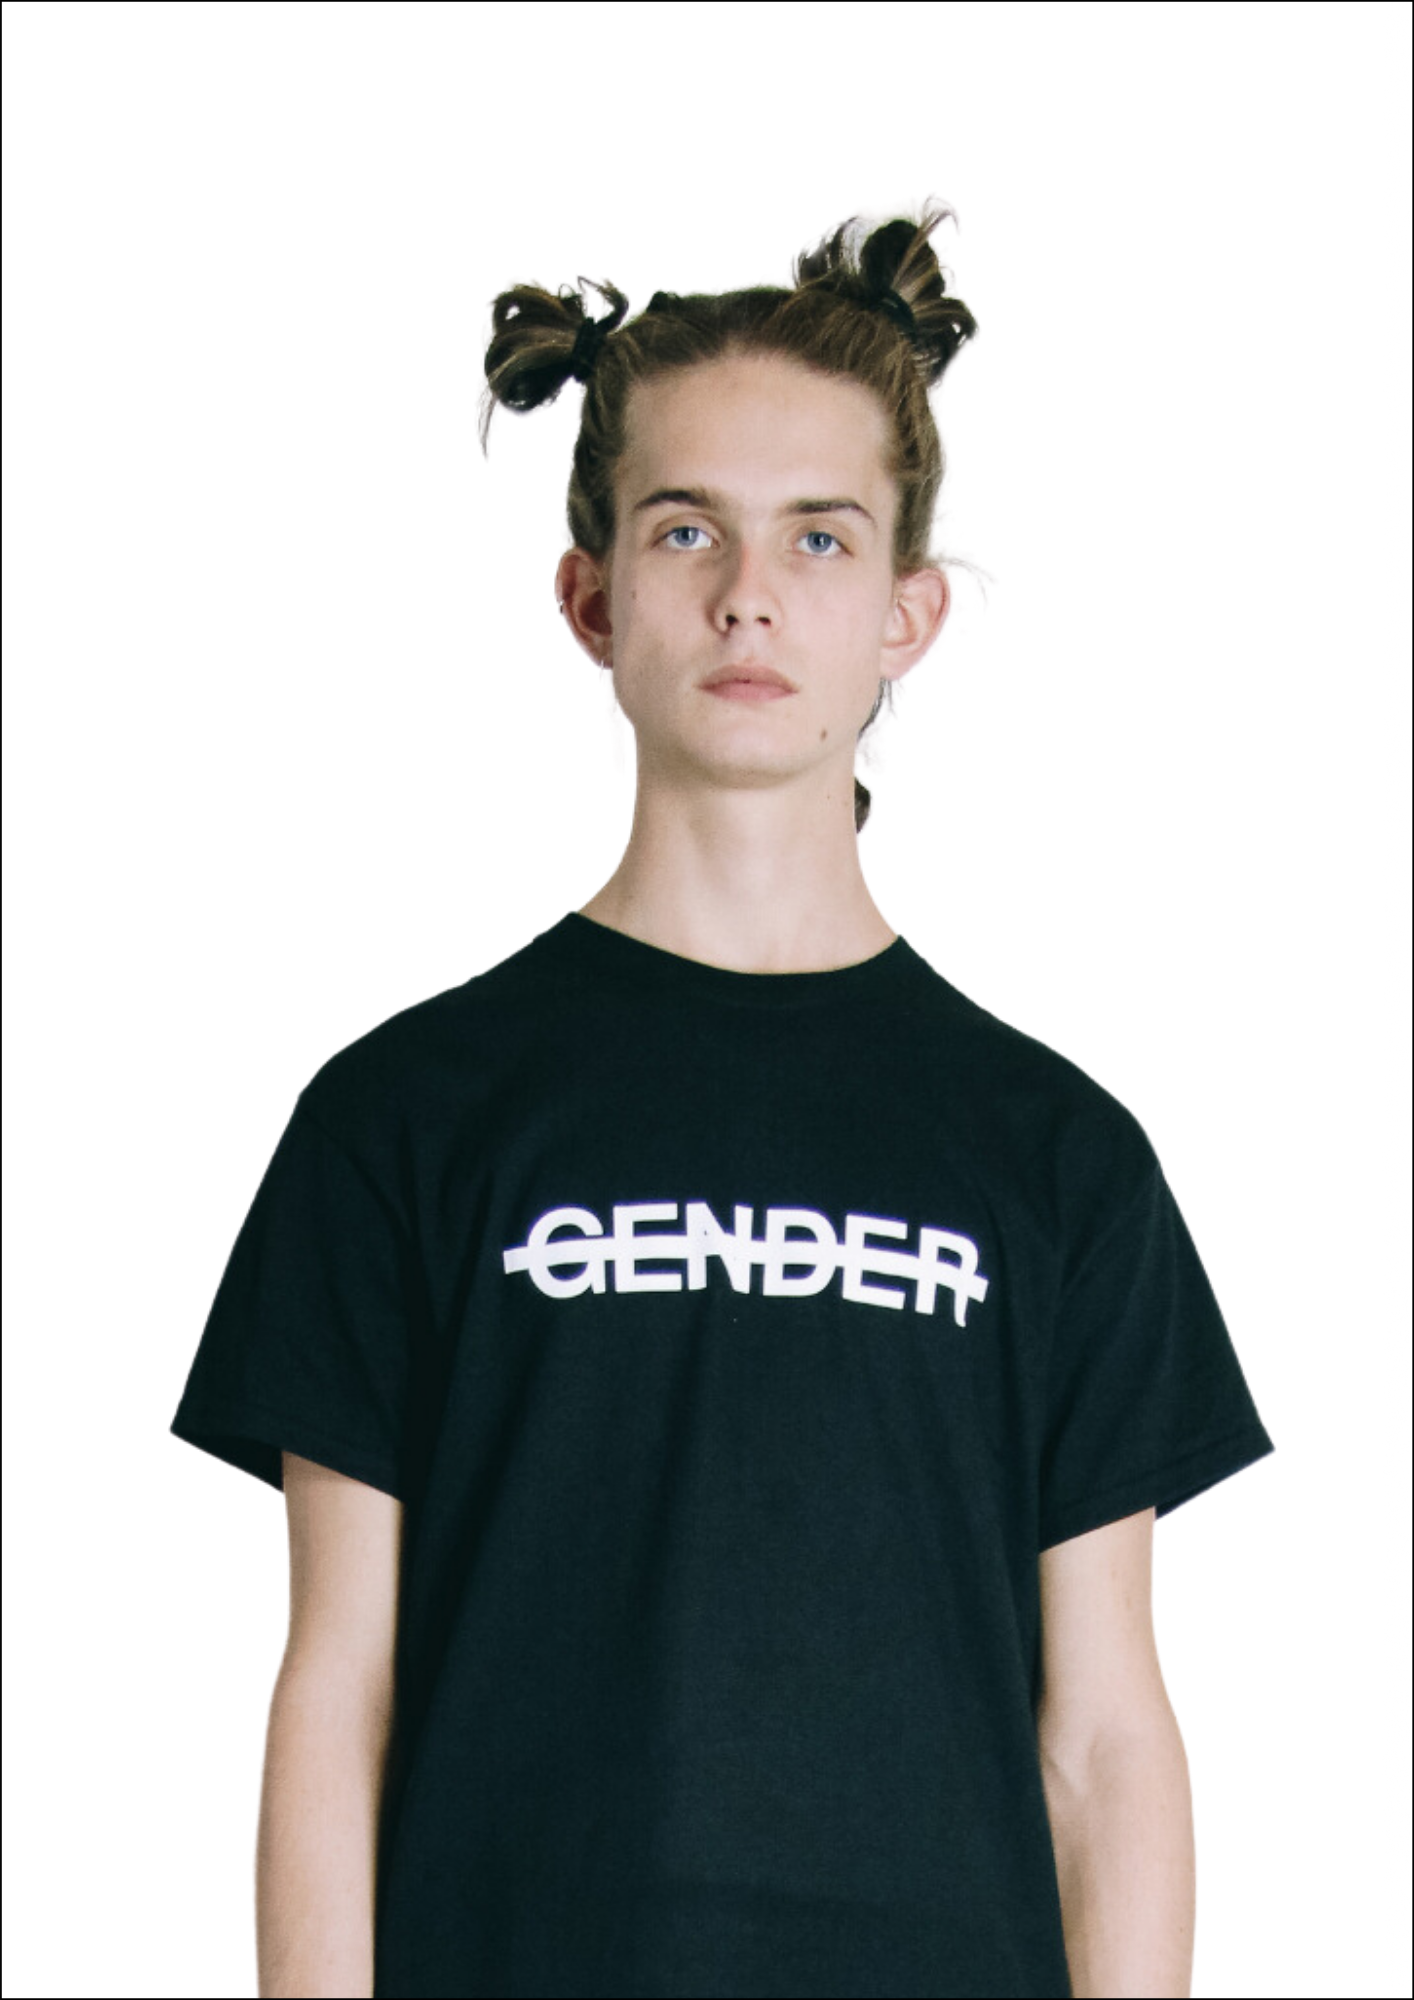 No gender t-shirt - white